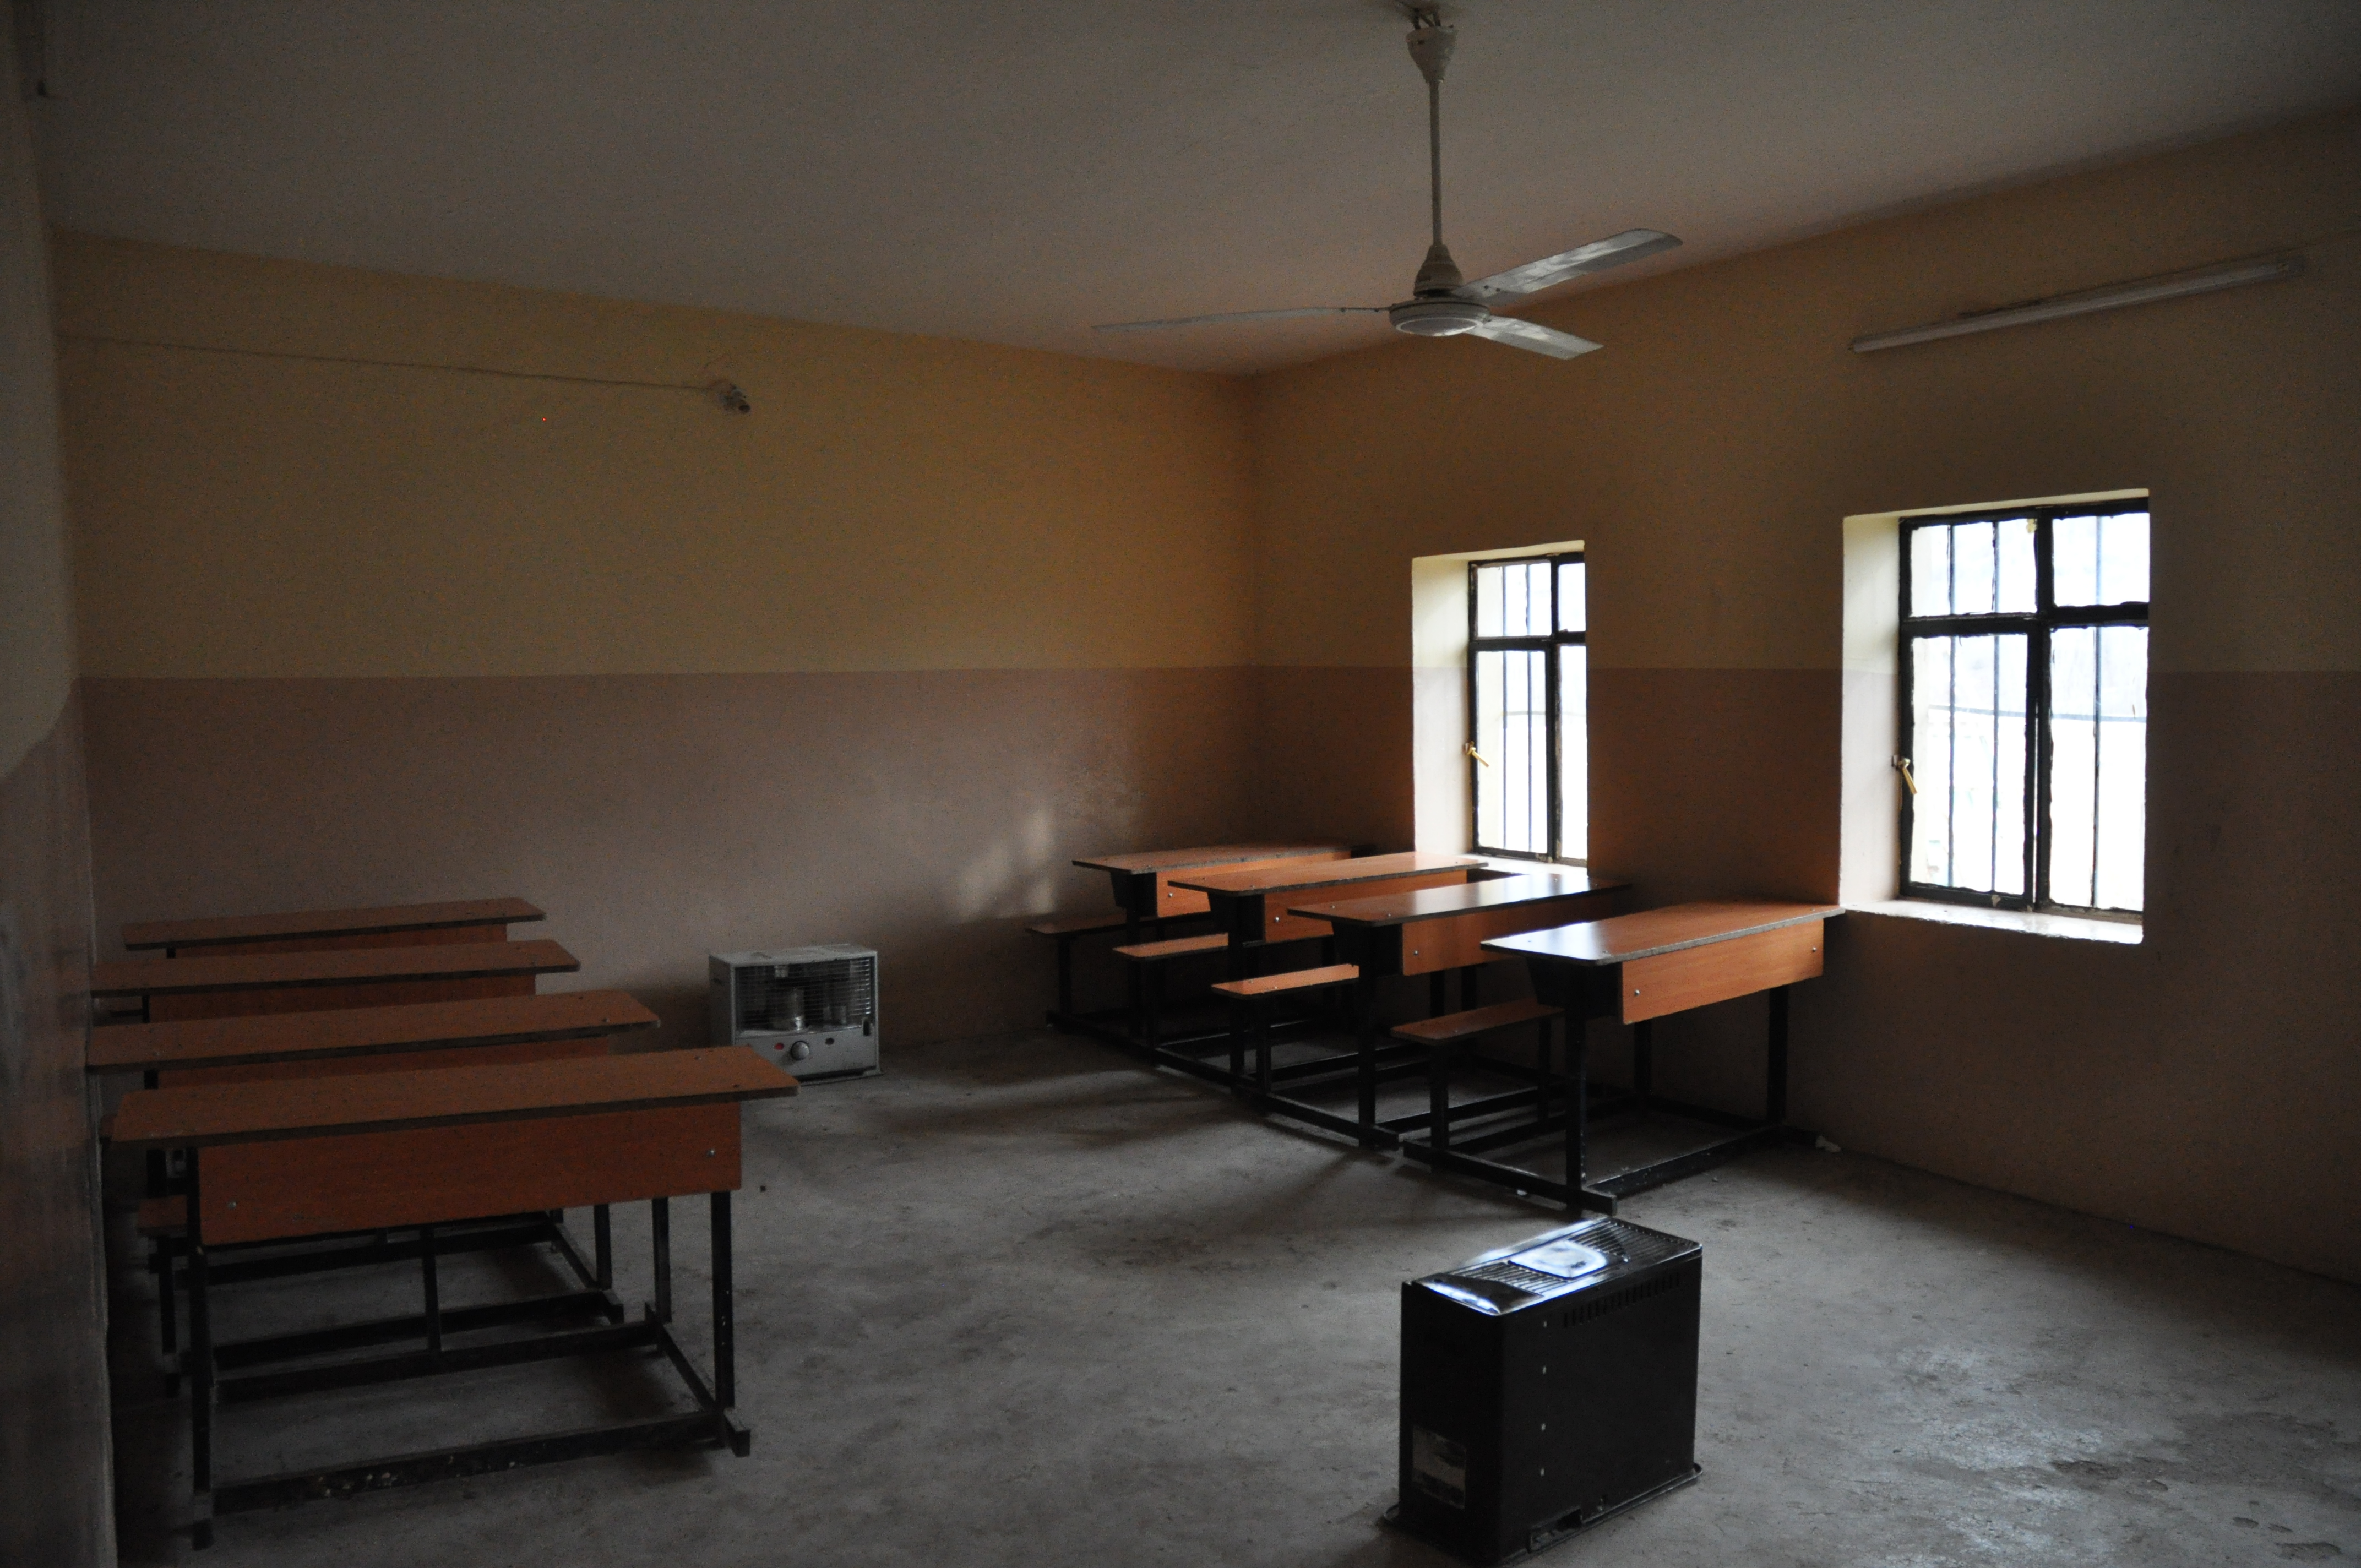 Viele Klassenräume werden für Geflüchtete genutzt, so dass der Unterricht in den kurdischen Gebieten des Nordirak zum Erliegen kommt, ähnlich wie bei der "Turnhallenpolitik" in Deutschland im vergangenen Jahr. Foto: © M.E. Çağlıdil